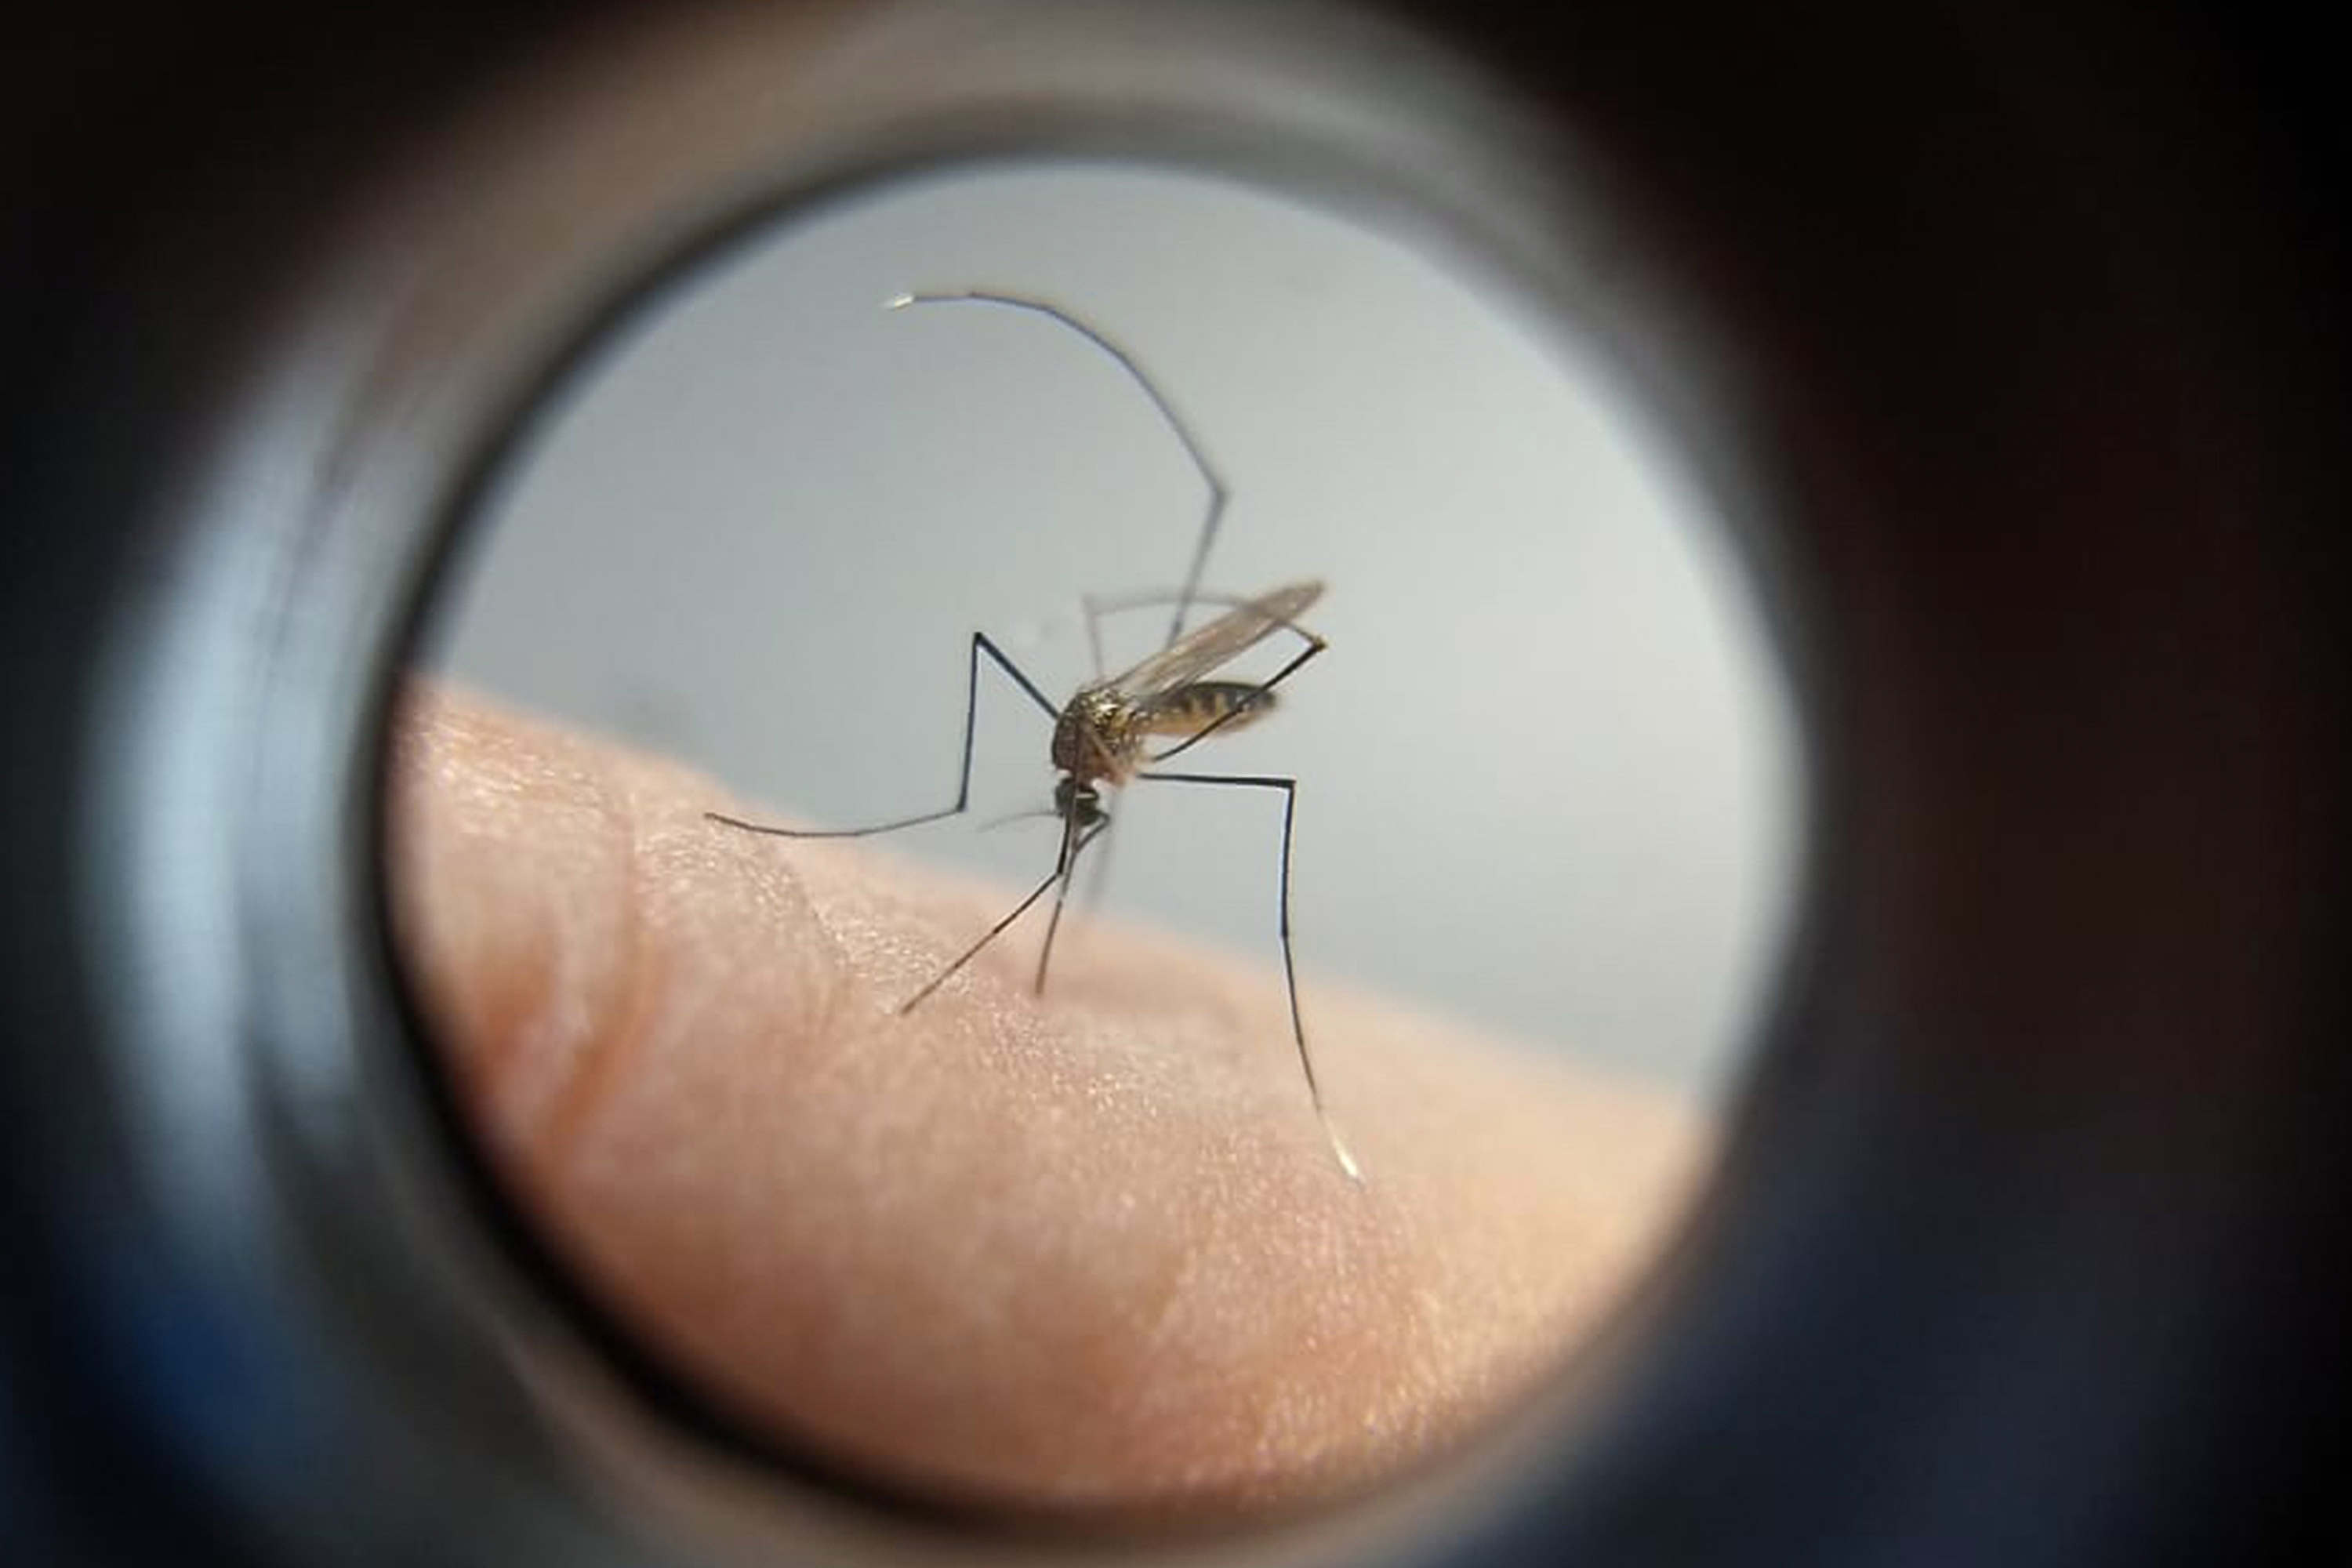 Paraná manda ofício ao Ministério da Saúde solicitando mais vacinas contra a dengue